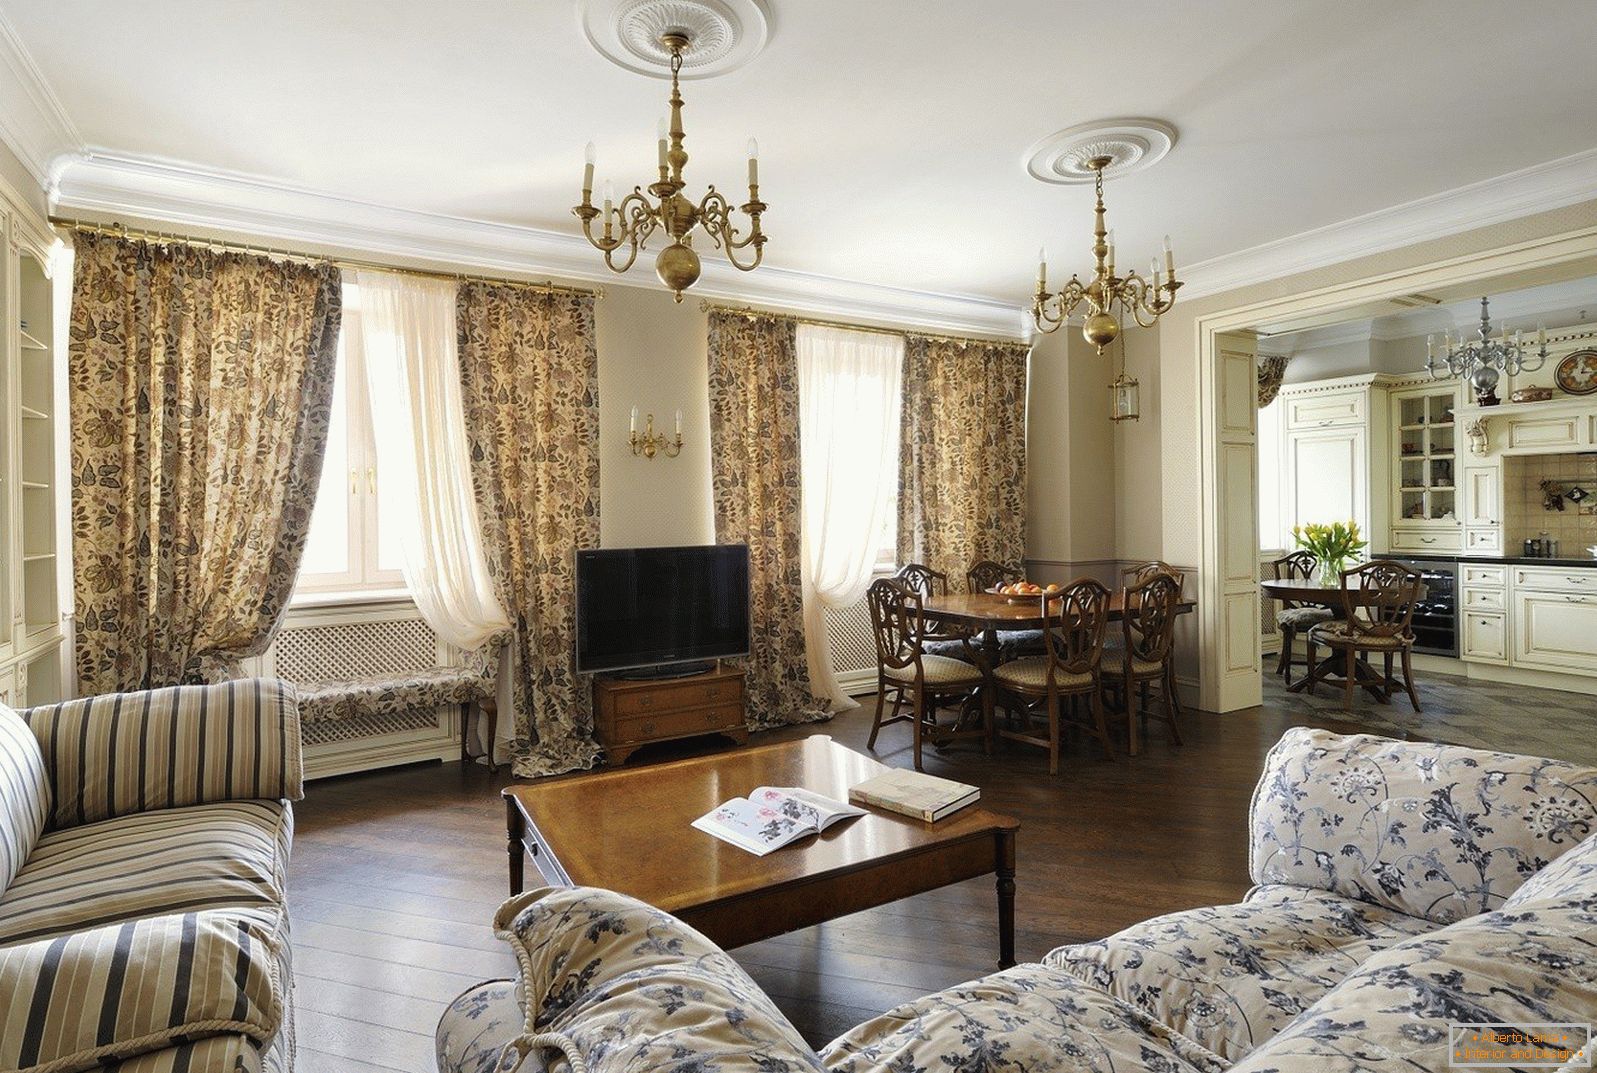 Wohnzimmer im klassischen Stil mit zwei Fenstern